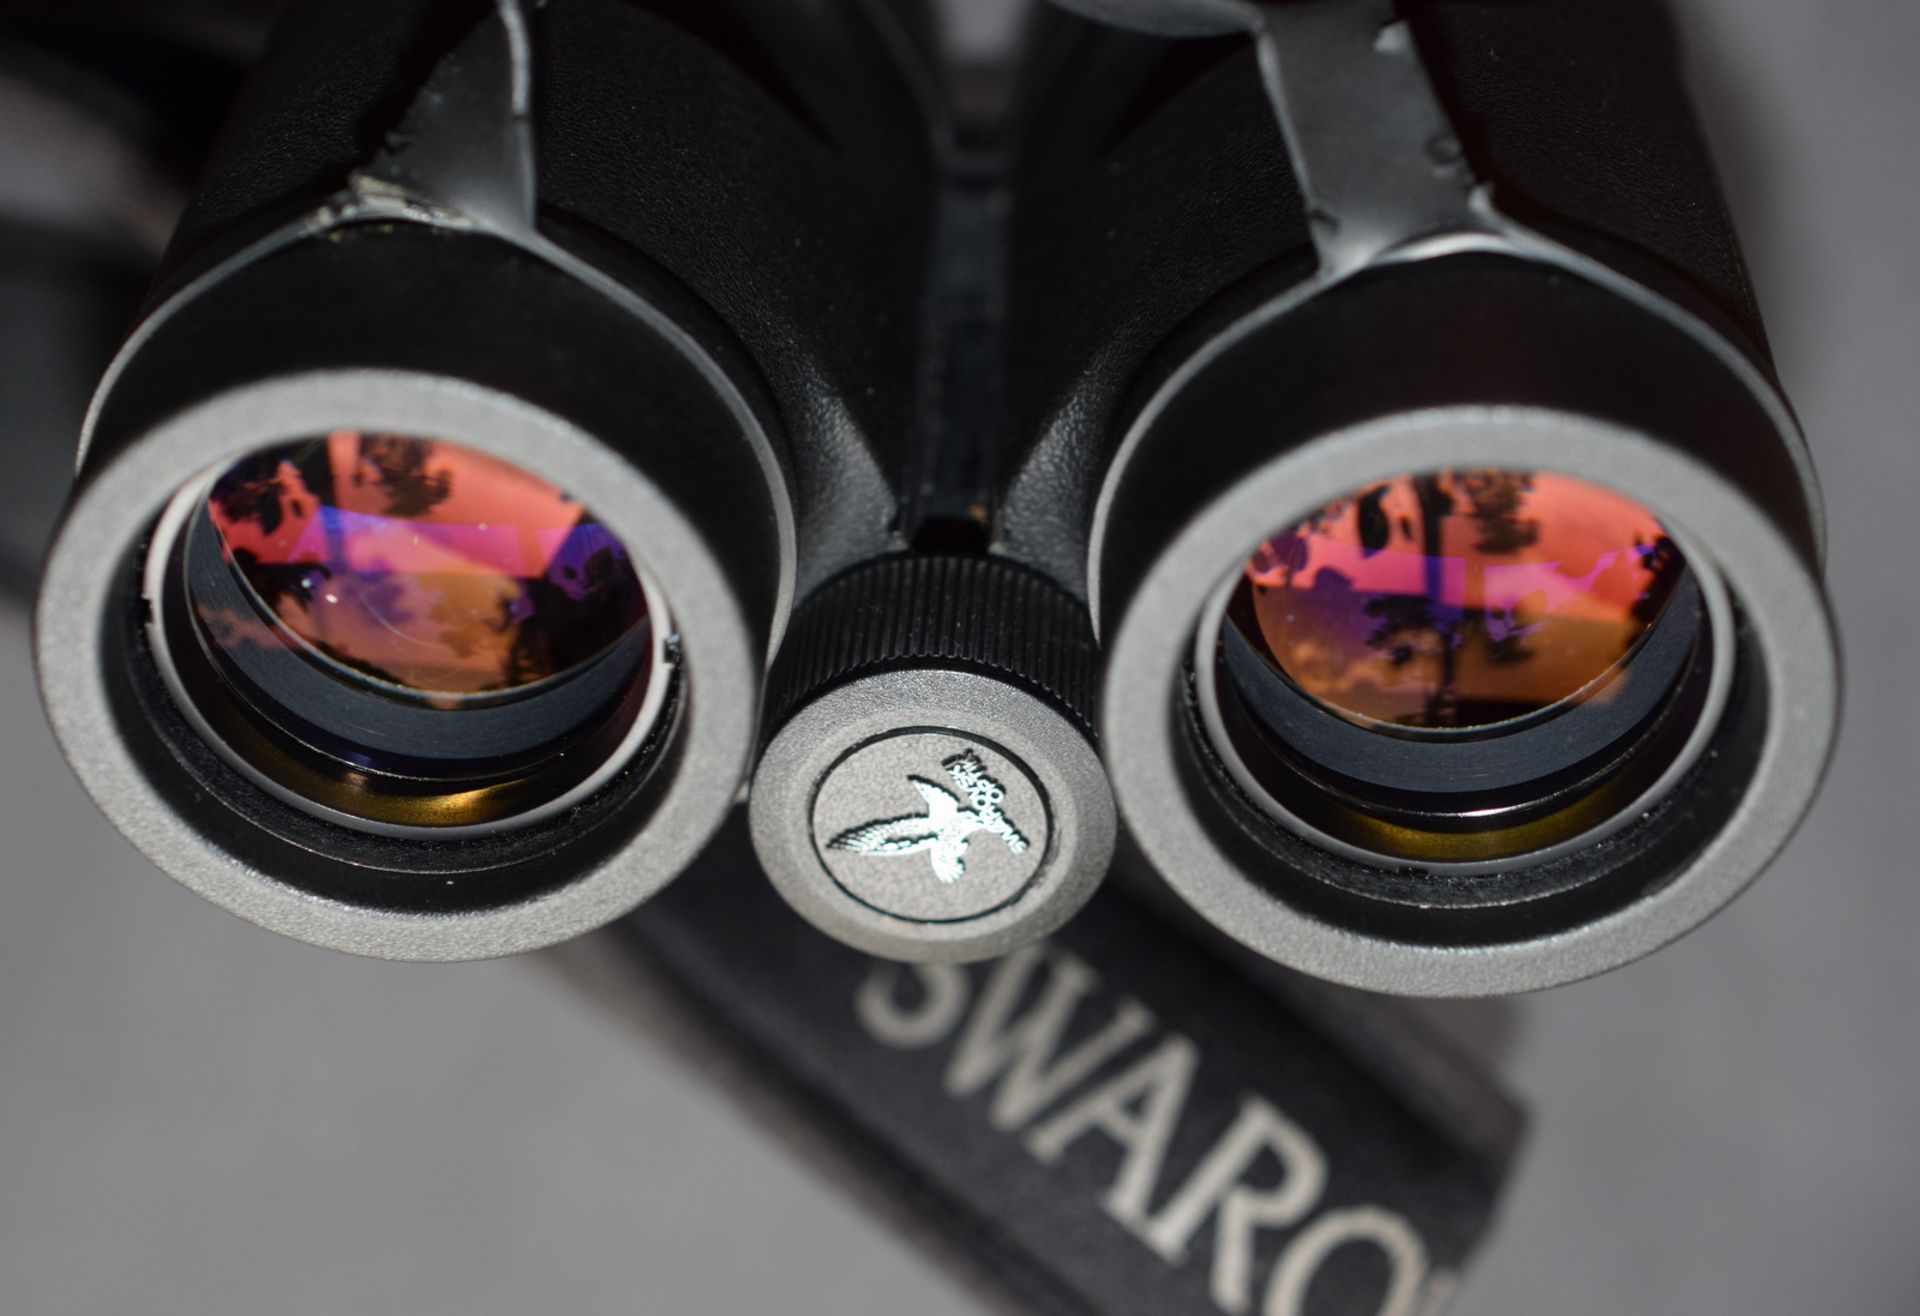 Swarovski Habicht 8X30WB Binoculars In Case - Image 3 of 5